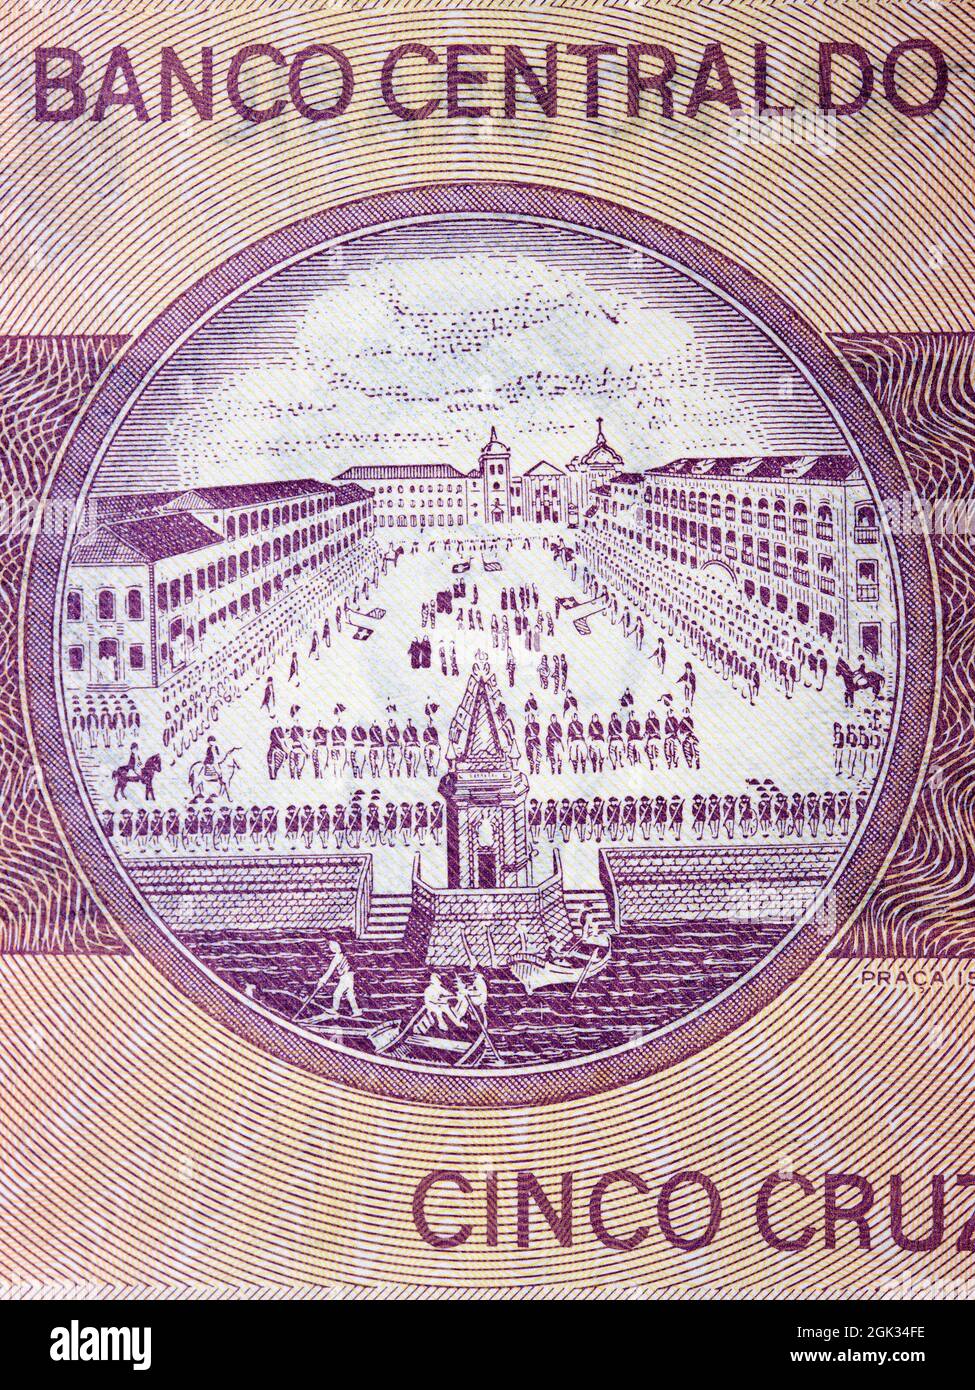 Praca XV de Novembre in Rio de Janeiro from old Brazilian money Stock Photo